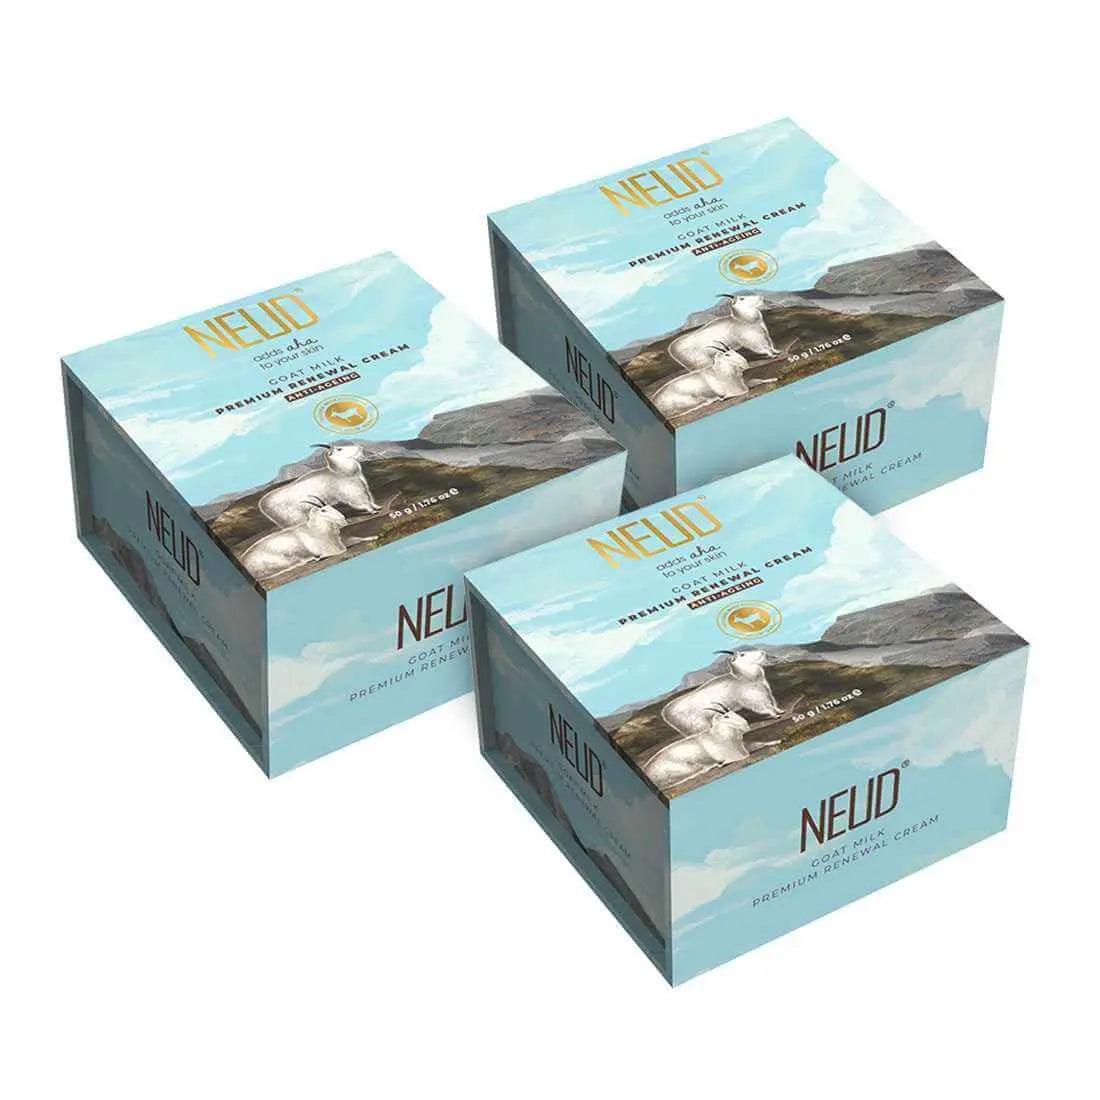 NEUD Goat Milk Premium Skin Renewal Cream for Men & Women - 50 g 9559682300782